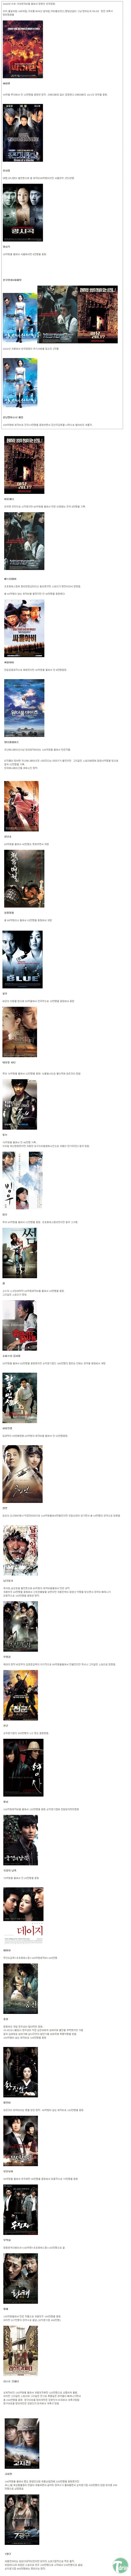 1 (2).jpg : 제작비를 말아먹은 한국영화들.JPG